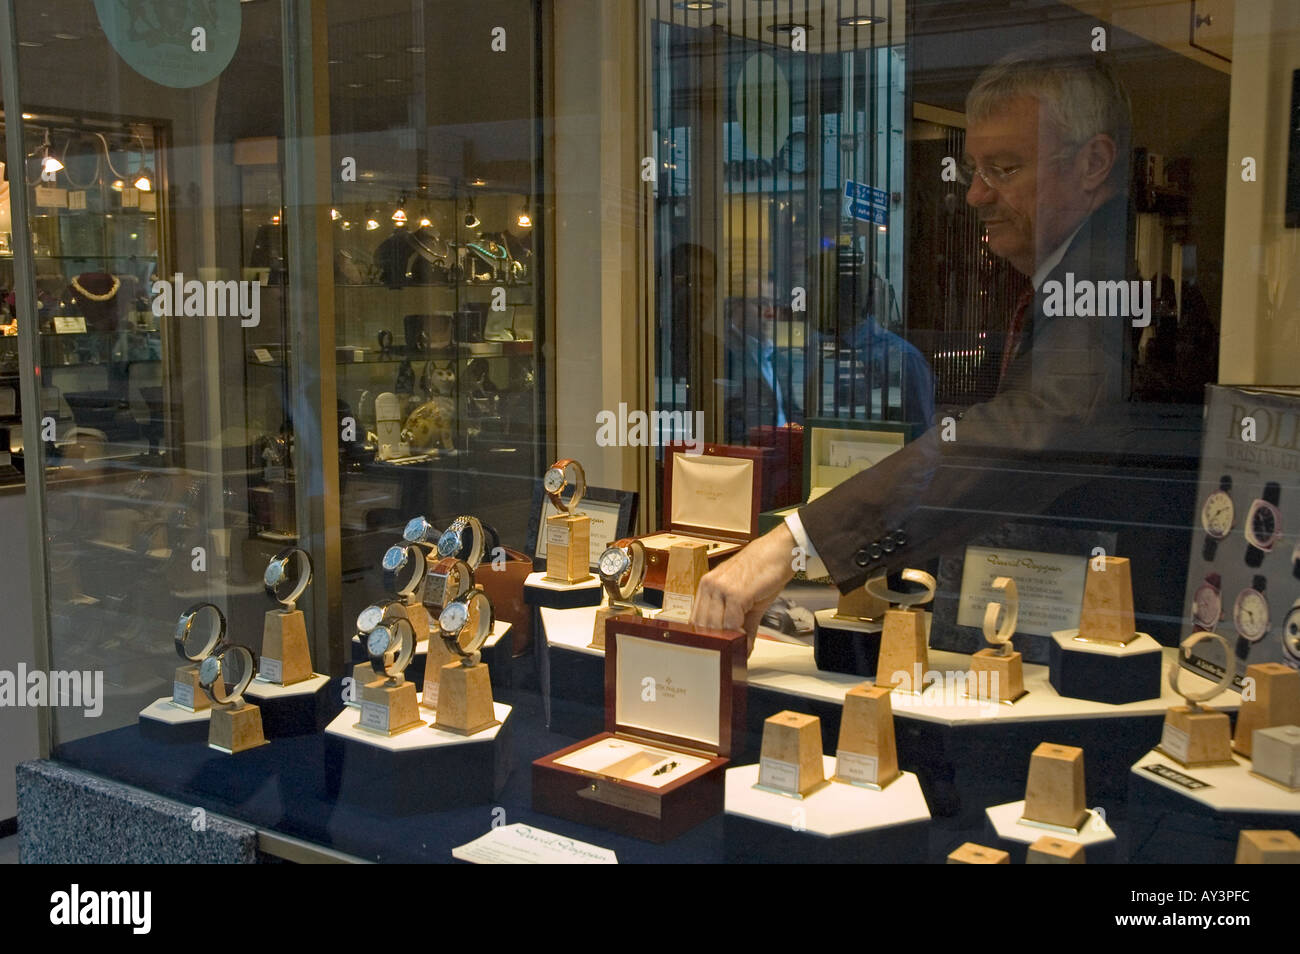 Uomo disponendo nuovamente la finestra di visualizzazione in un negozio di orologi Bond Street Londra Foto Stock